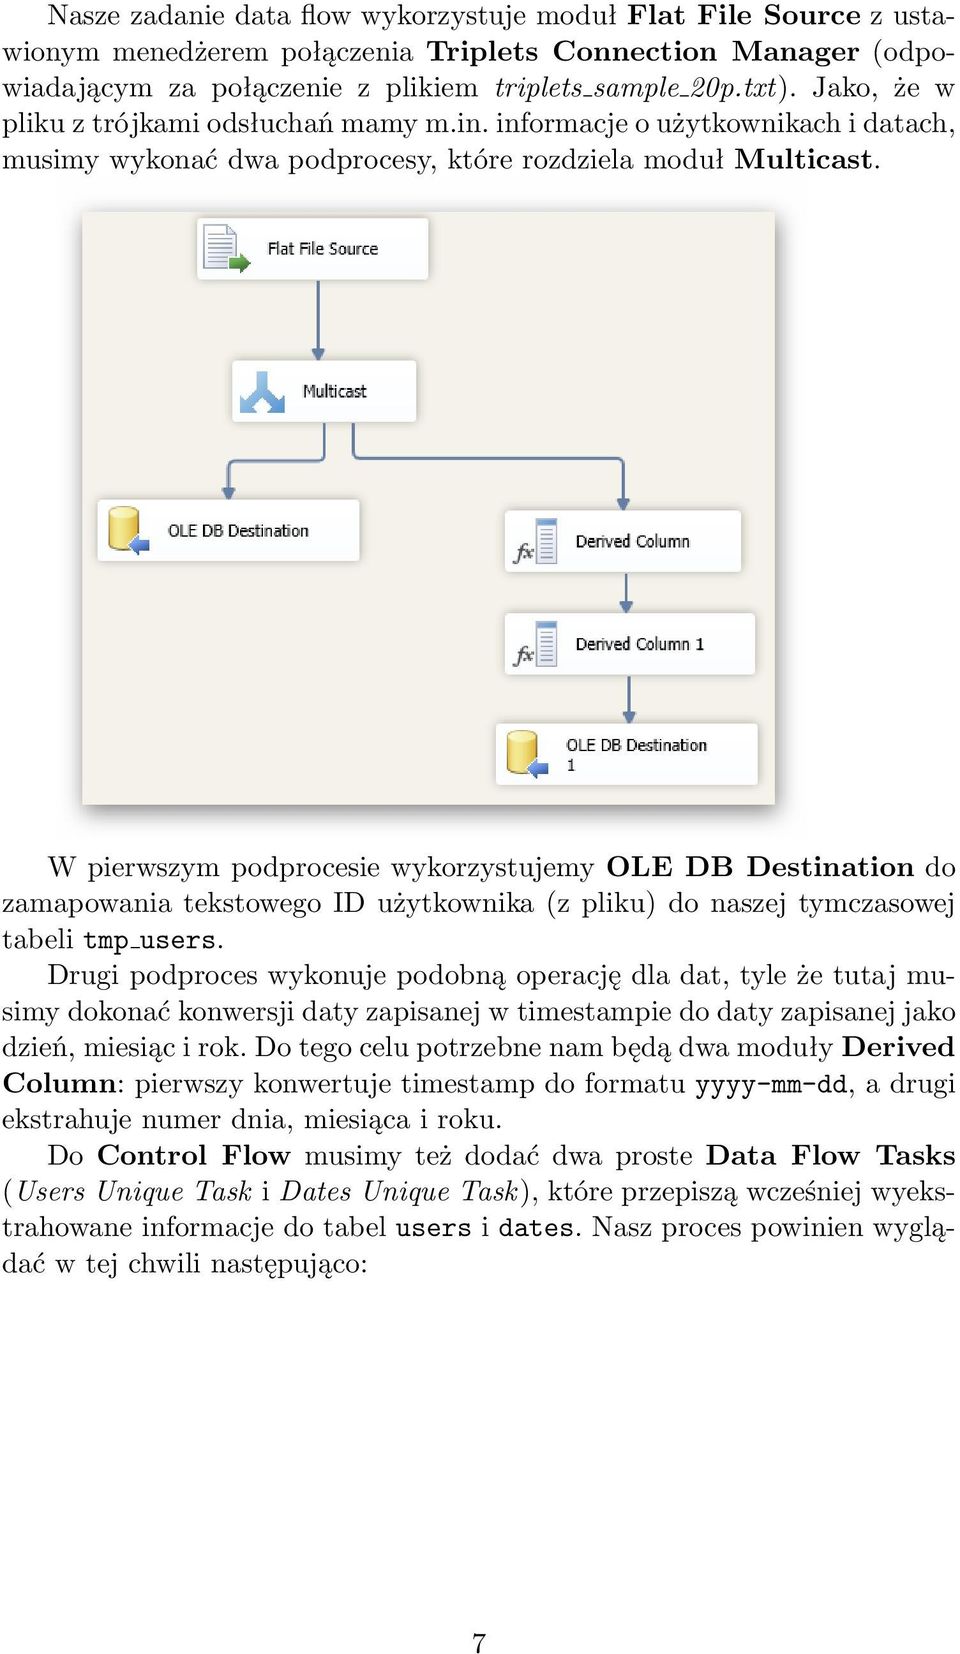 W pierwszym podprocesie wykorzystujemy OLE DB Destination do zamapowania tekstowego ID użytkownika (z pliku) do naszej tymczasowej tabeli tmp users.